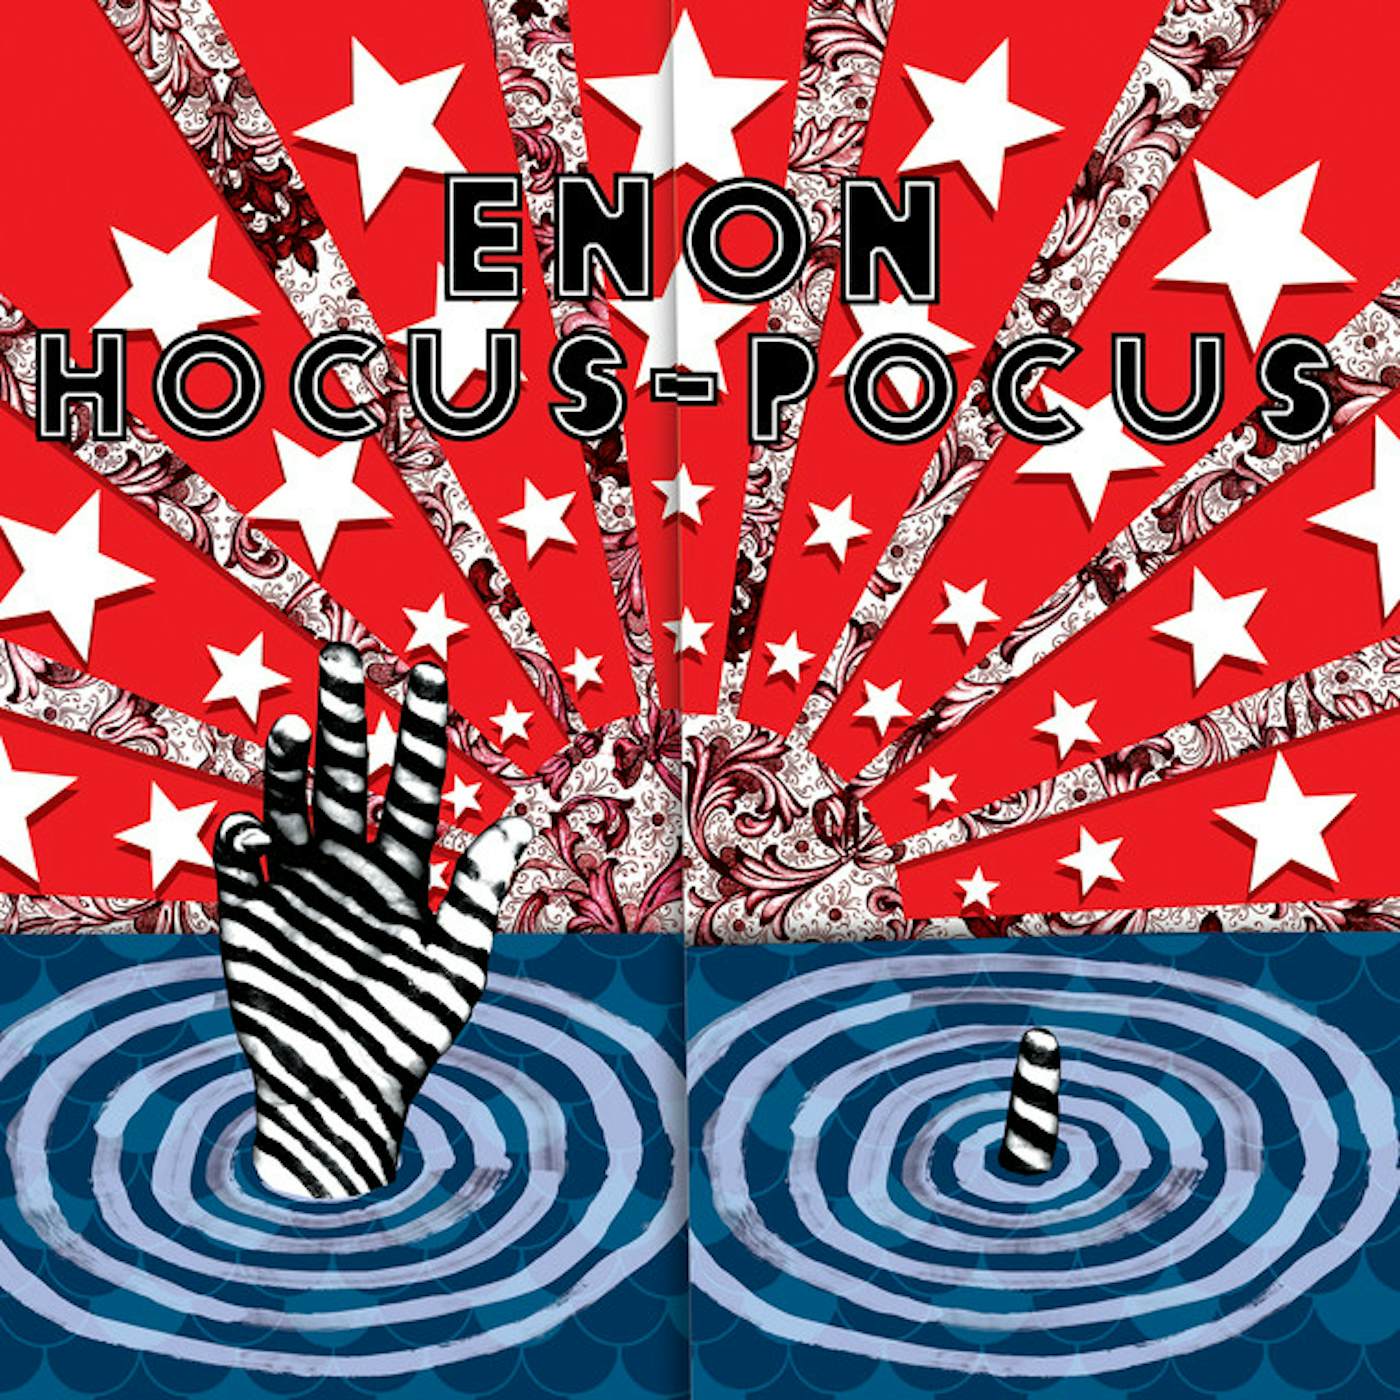 Enon Hocus Pocus Vinyl Record